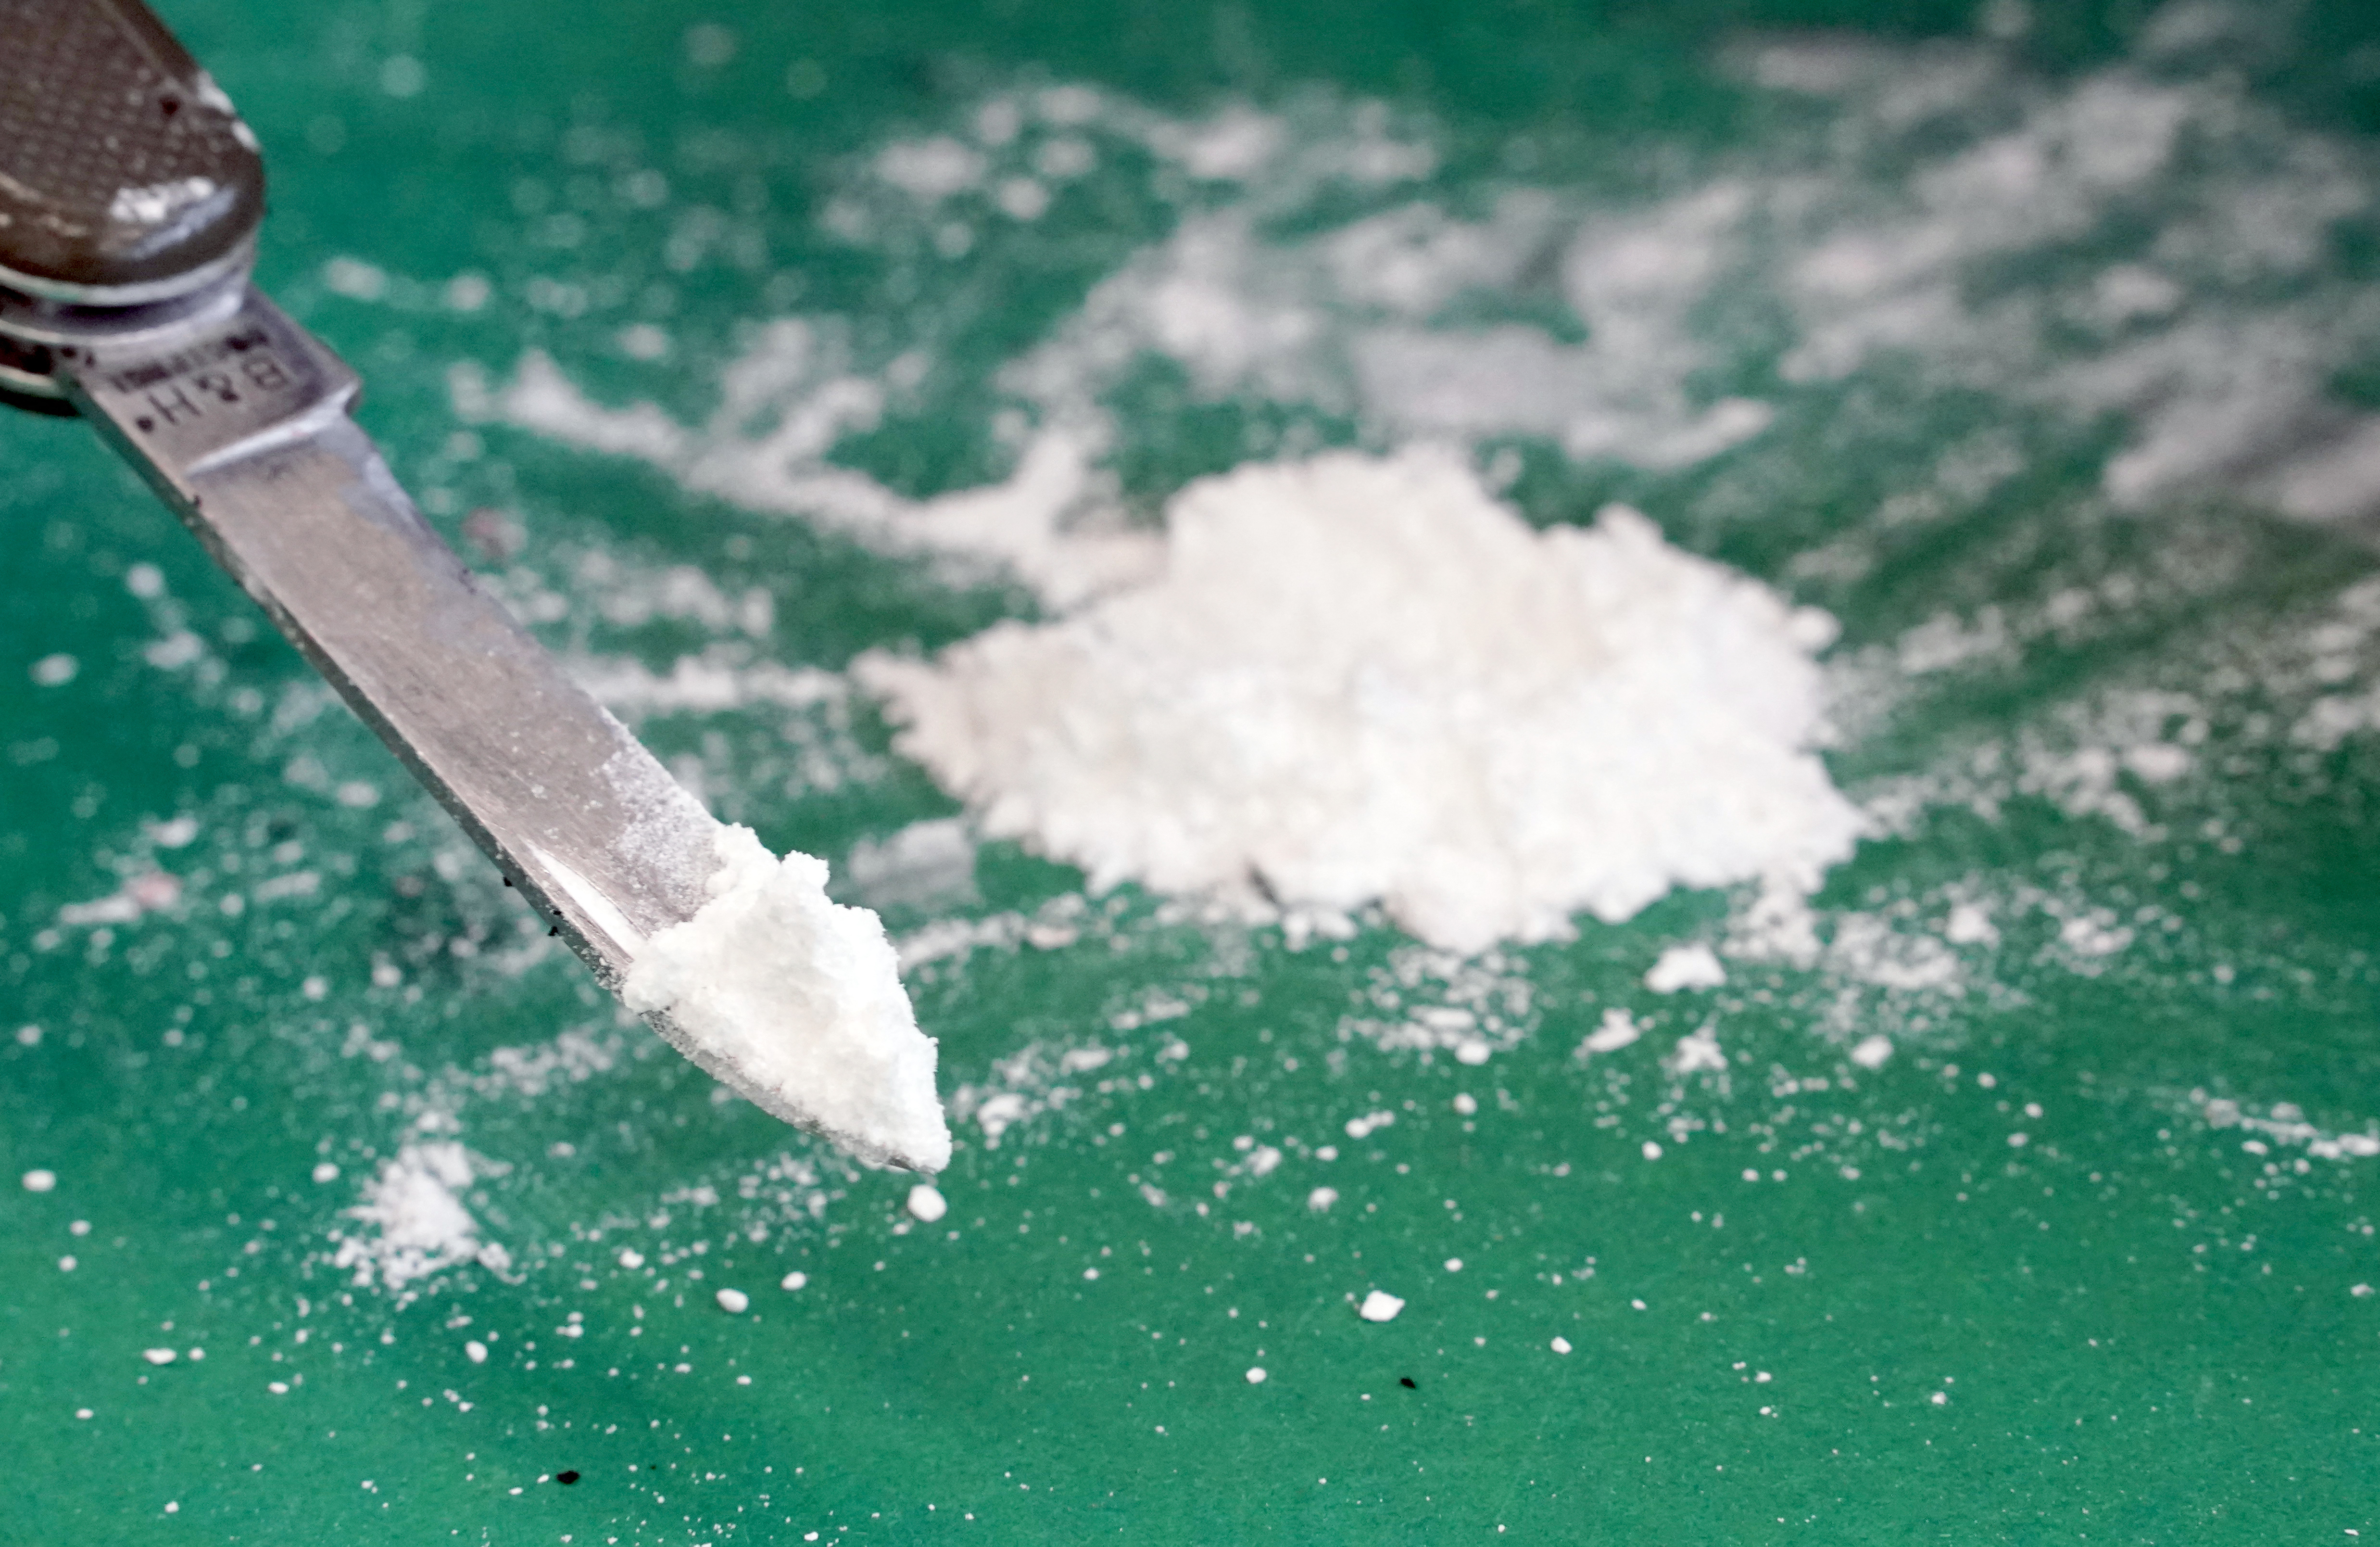 Antwerpenben a legmagasabb a kokainhasználók aránya Európában